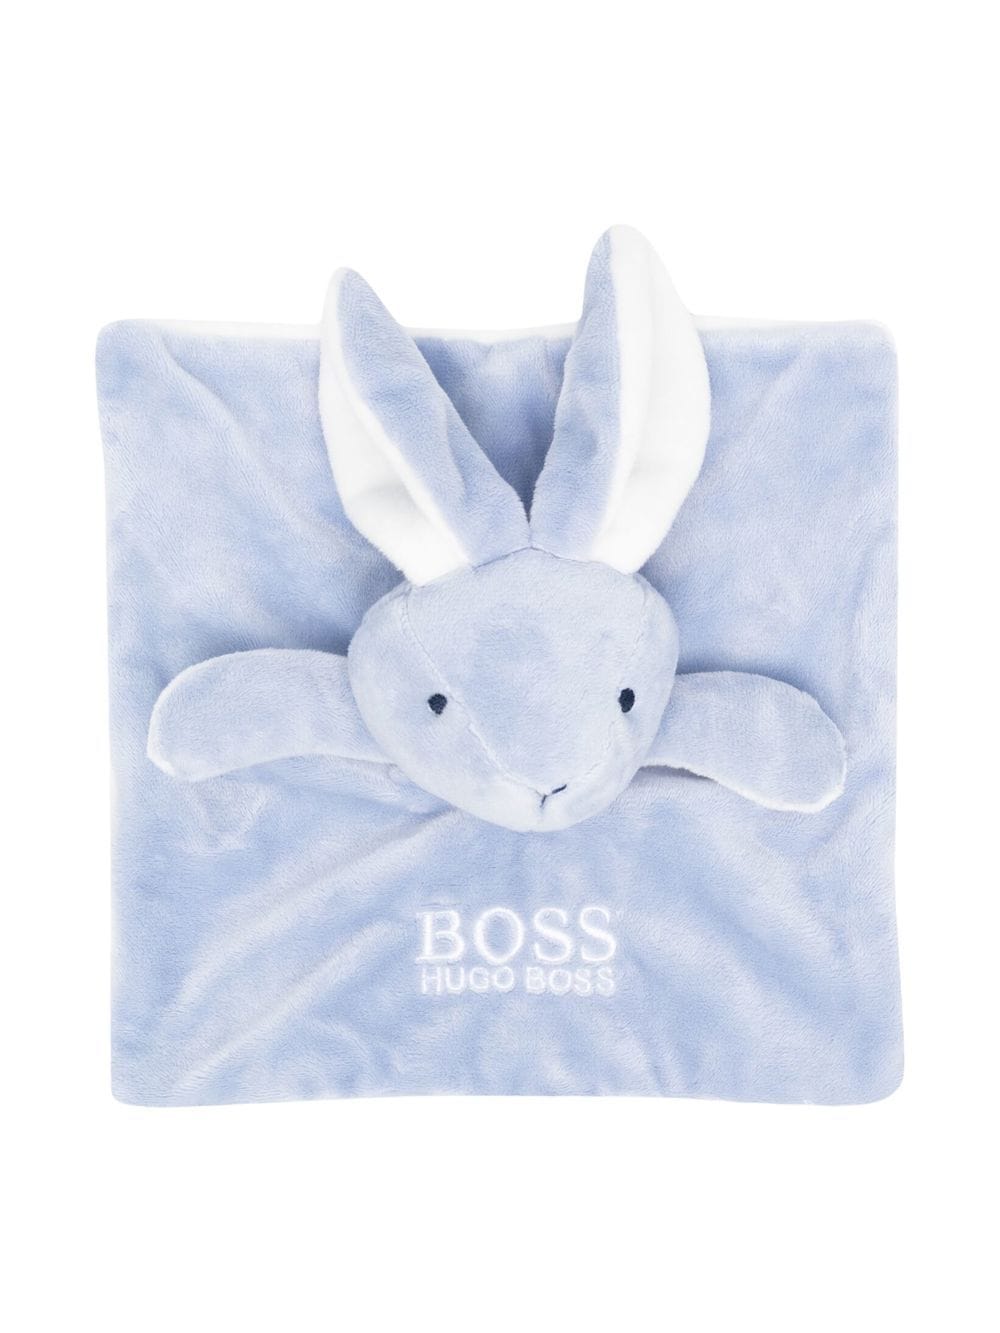 BOSS Kidswear DouDou bunny toy - Blue von BOSS Kidswear